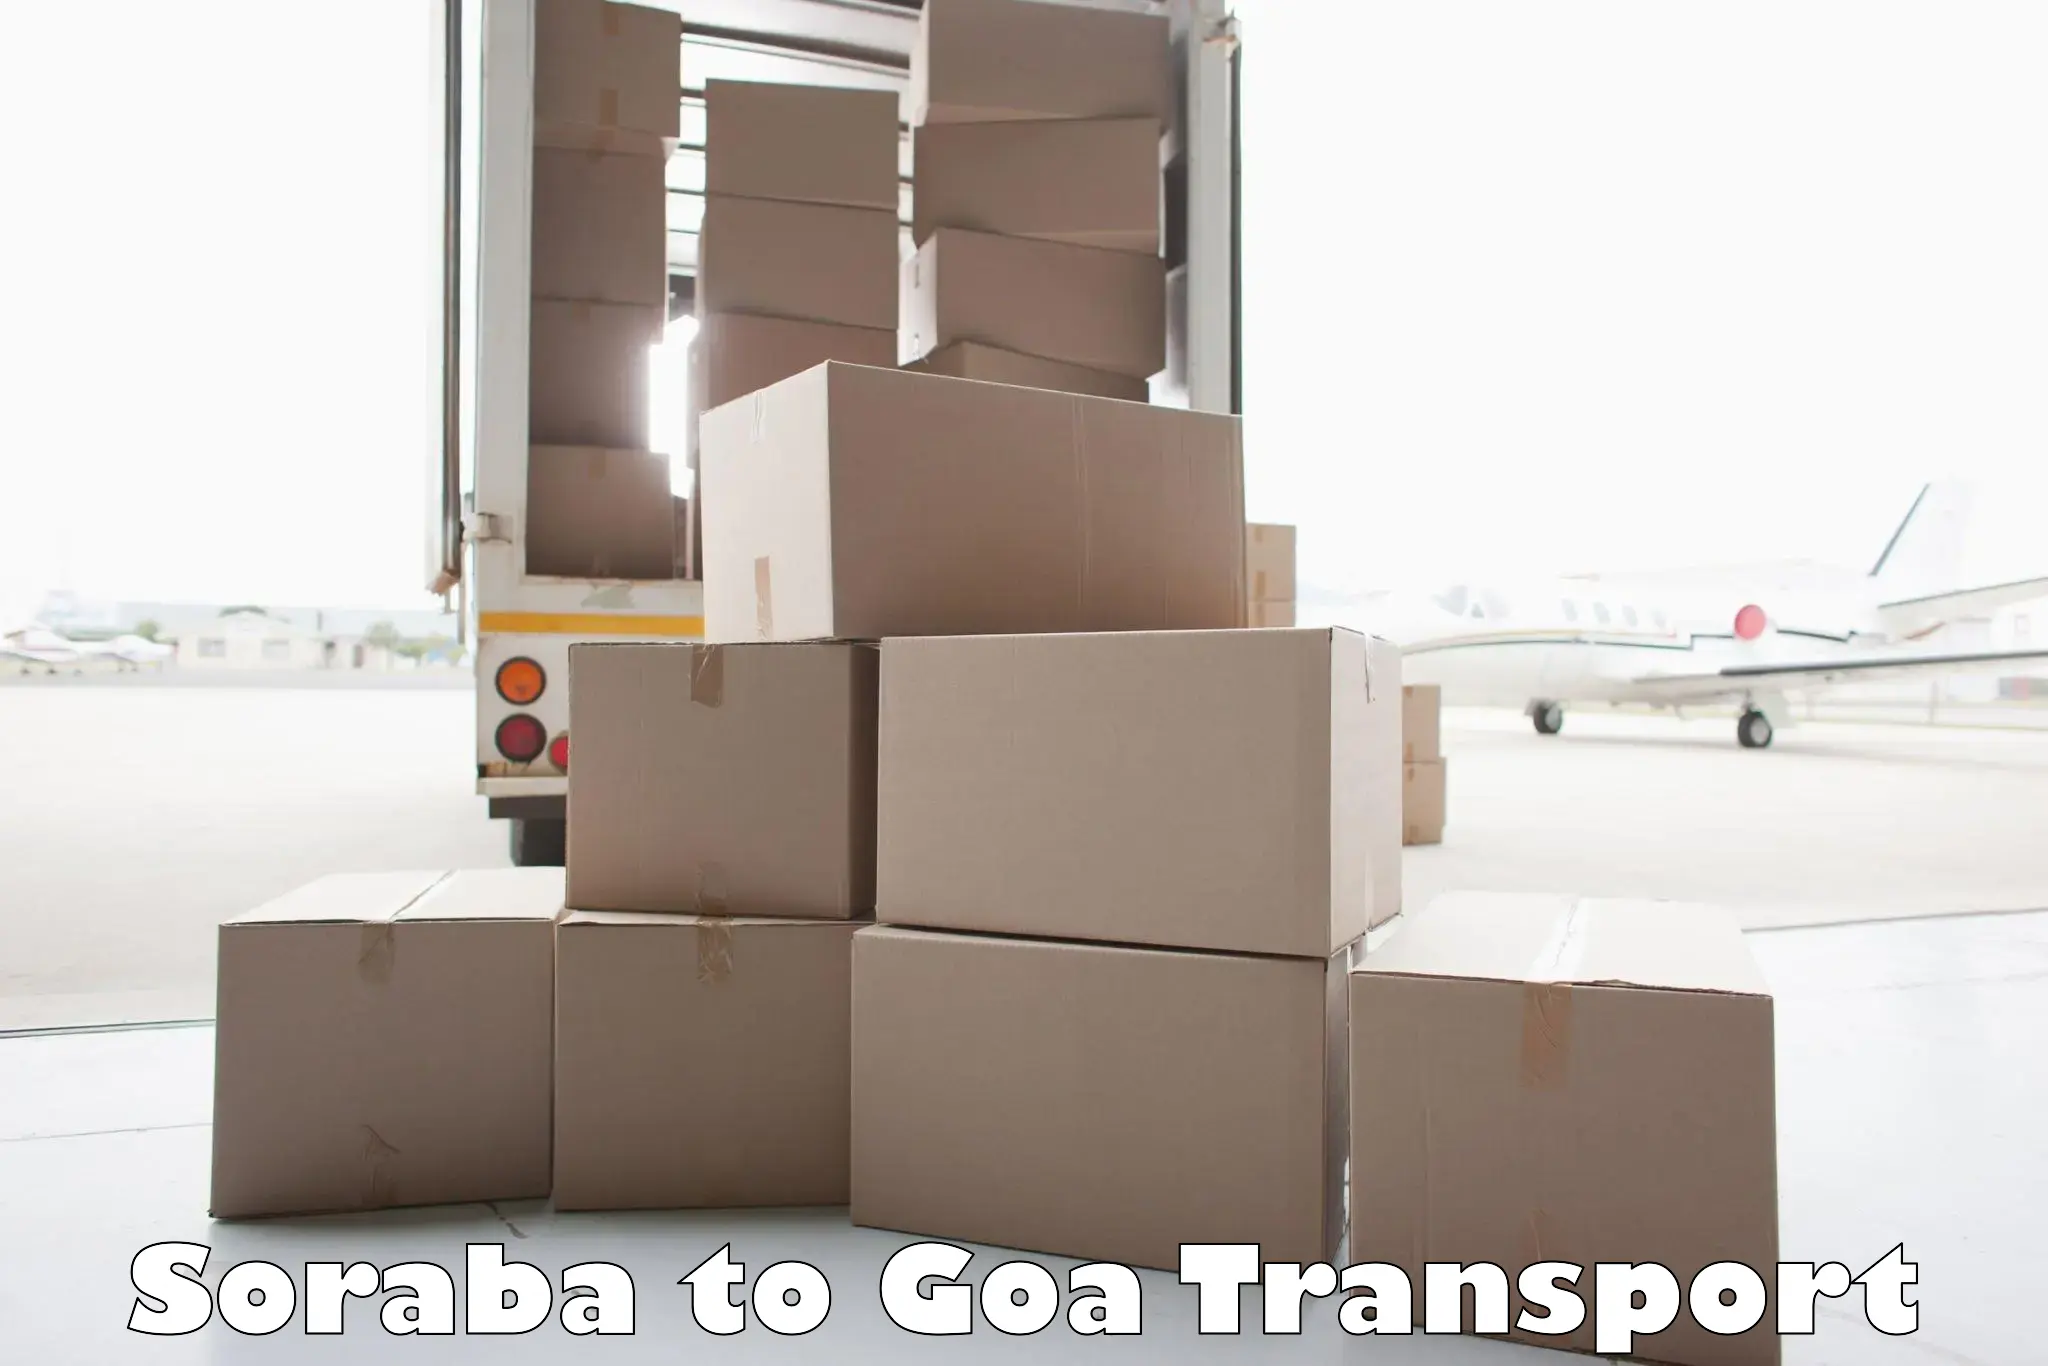 Lorry transport service Soraba to Canacona